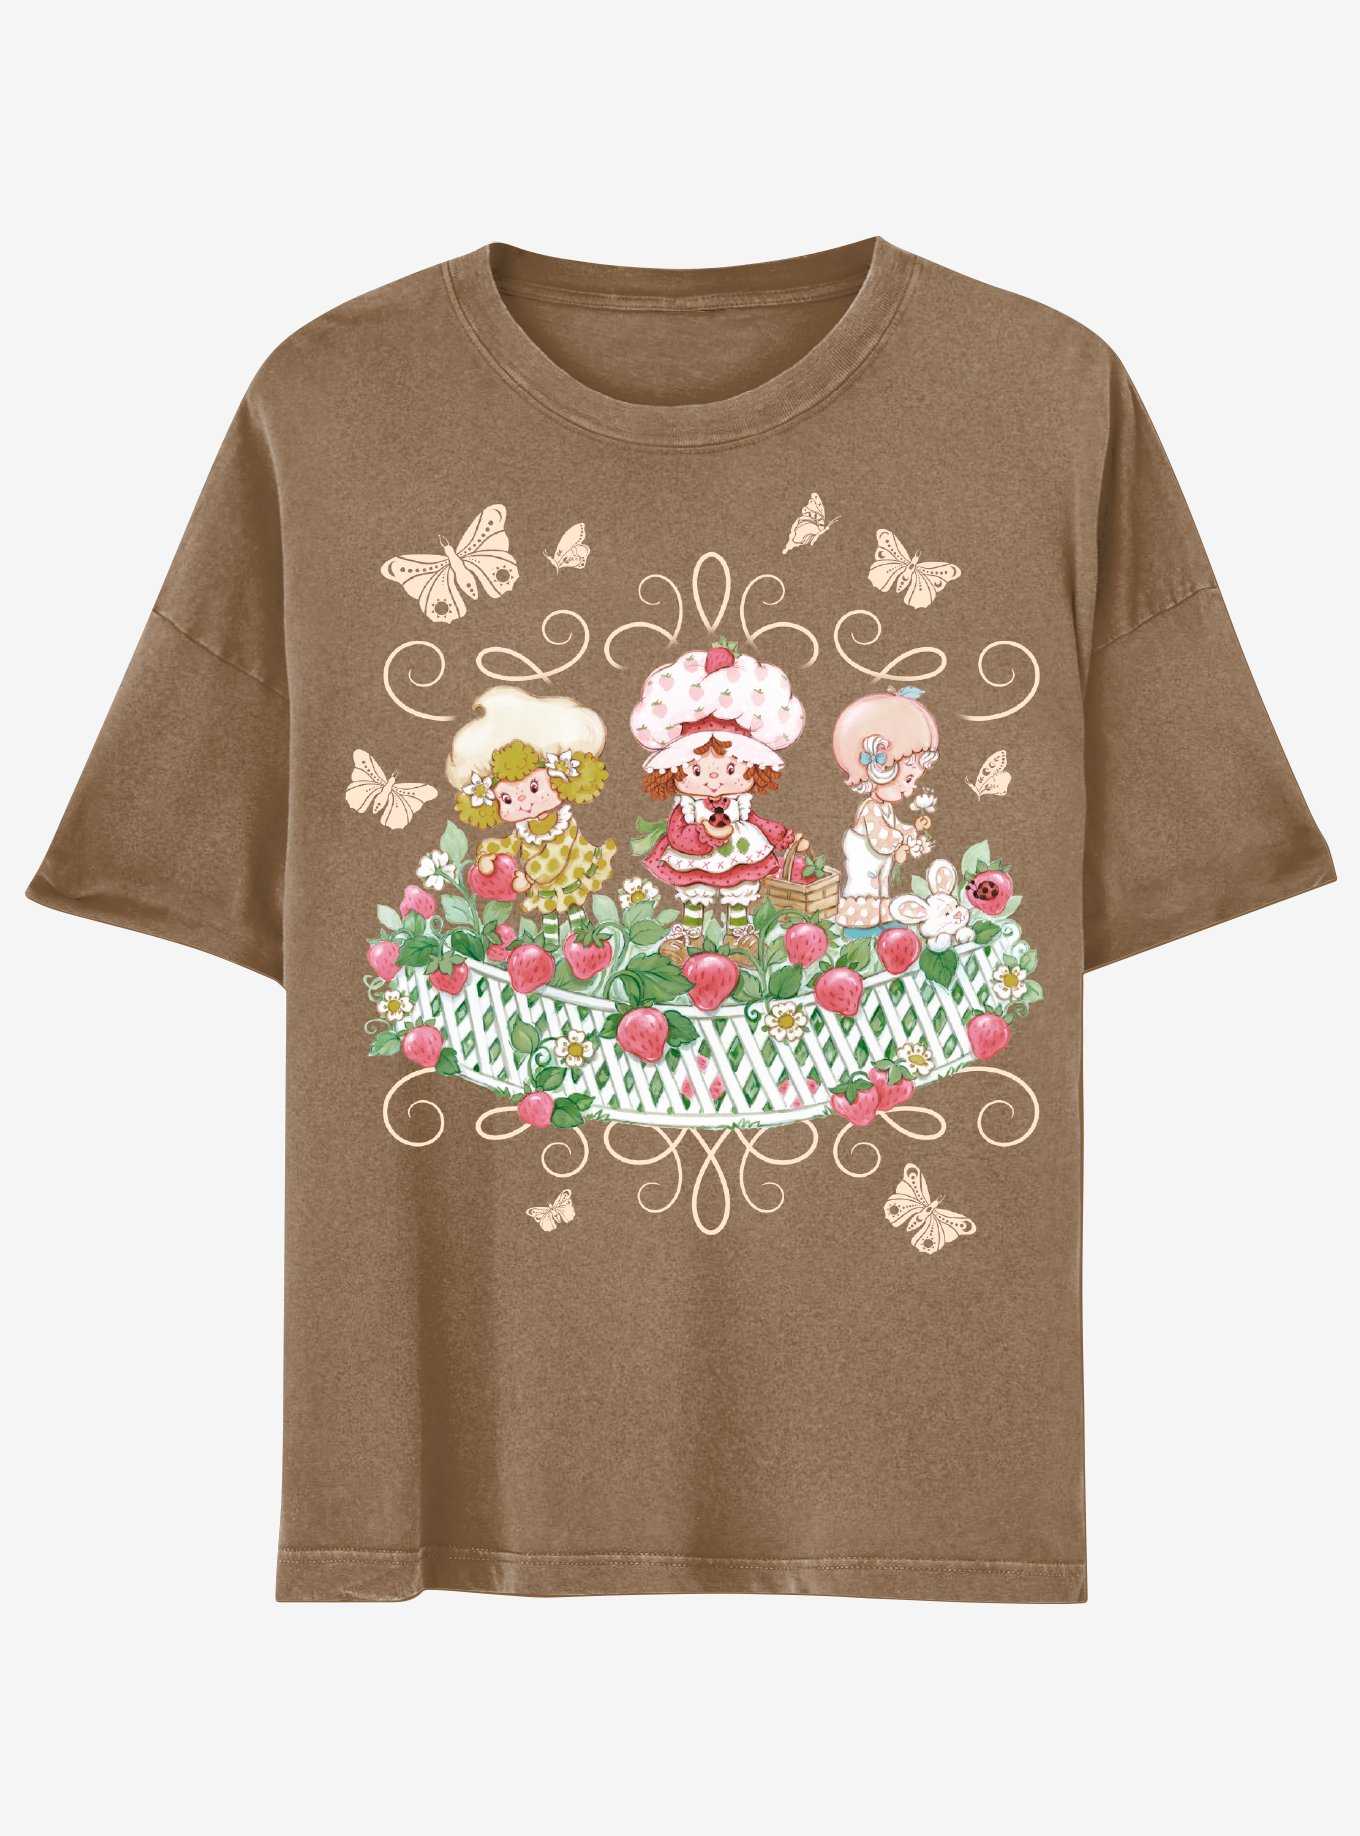 Strawberry Shortcake Brown Garden Boyfriend Fit Girls T-Shirt, , hi-res